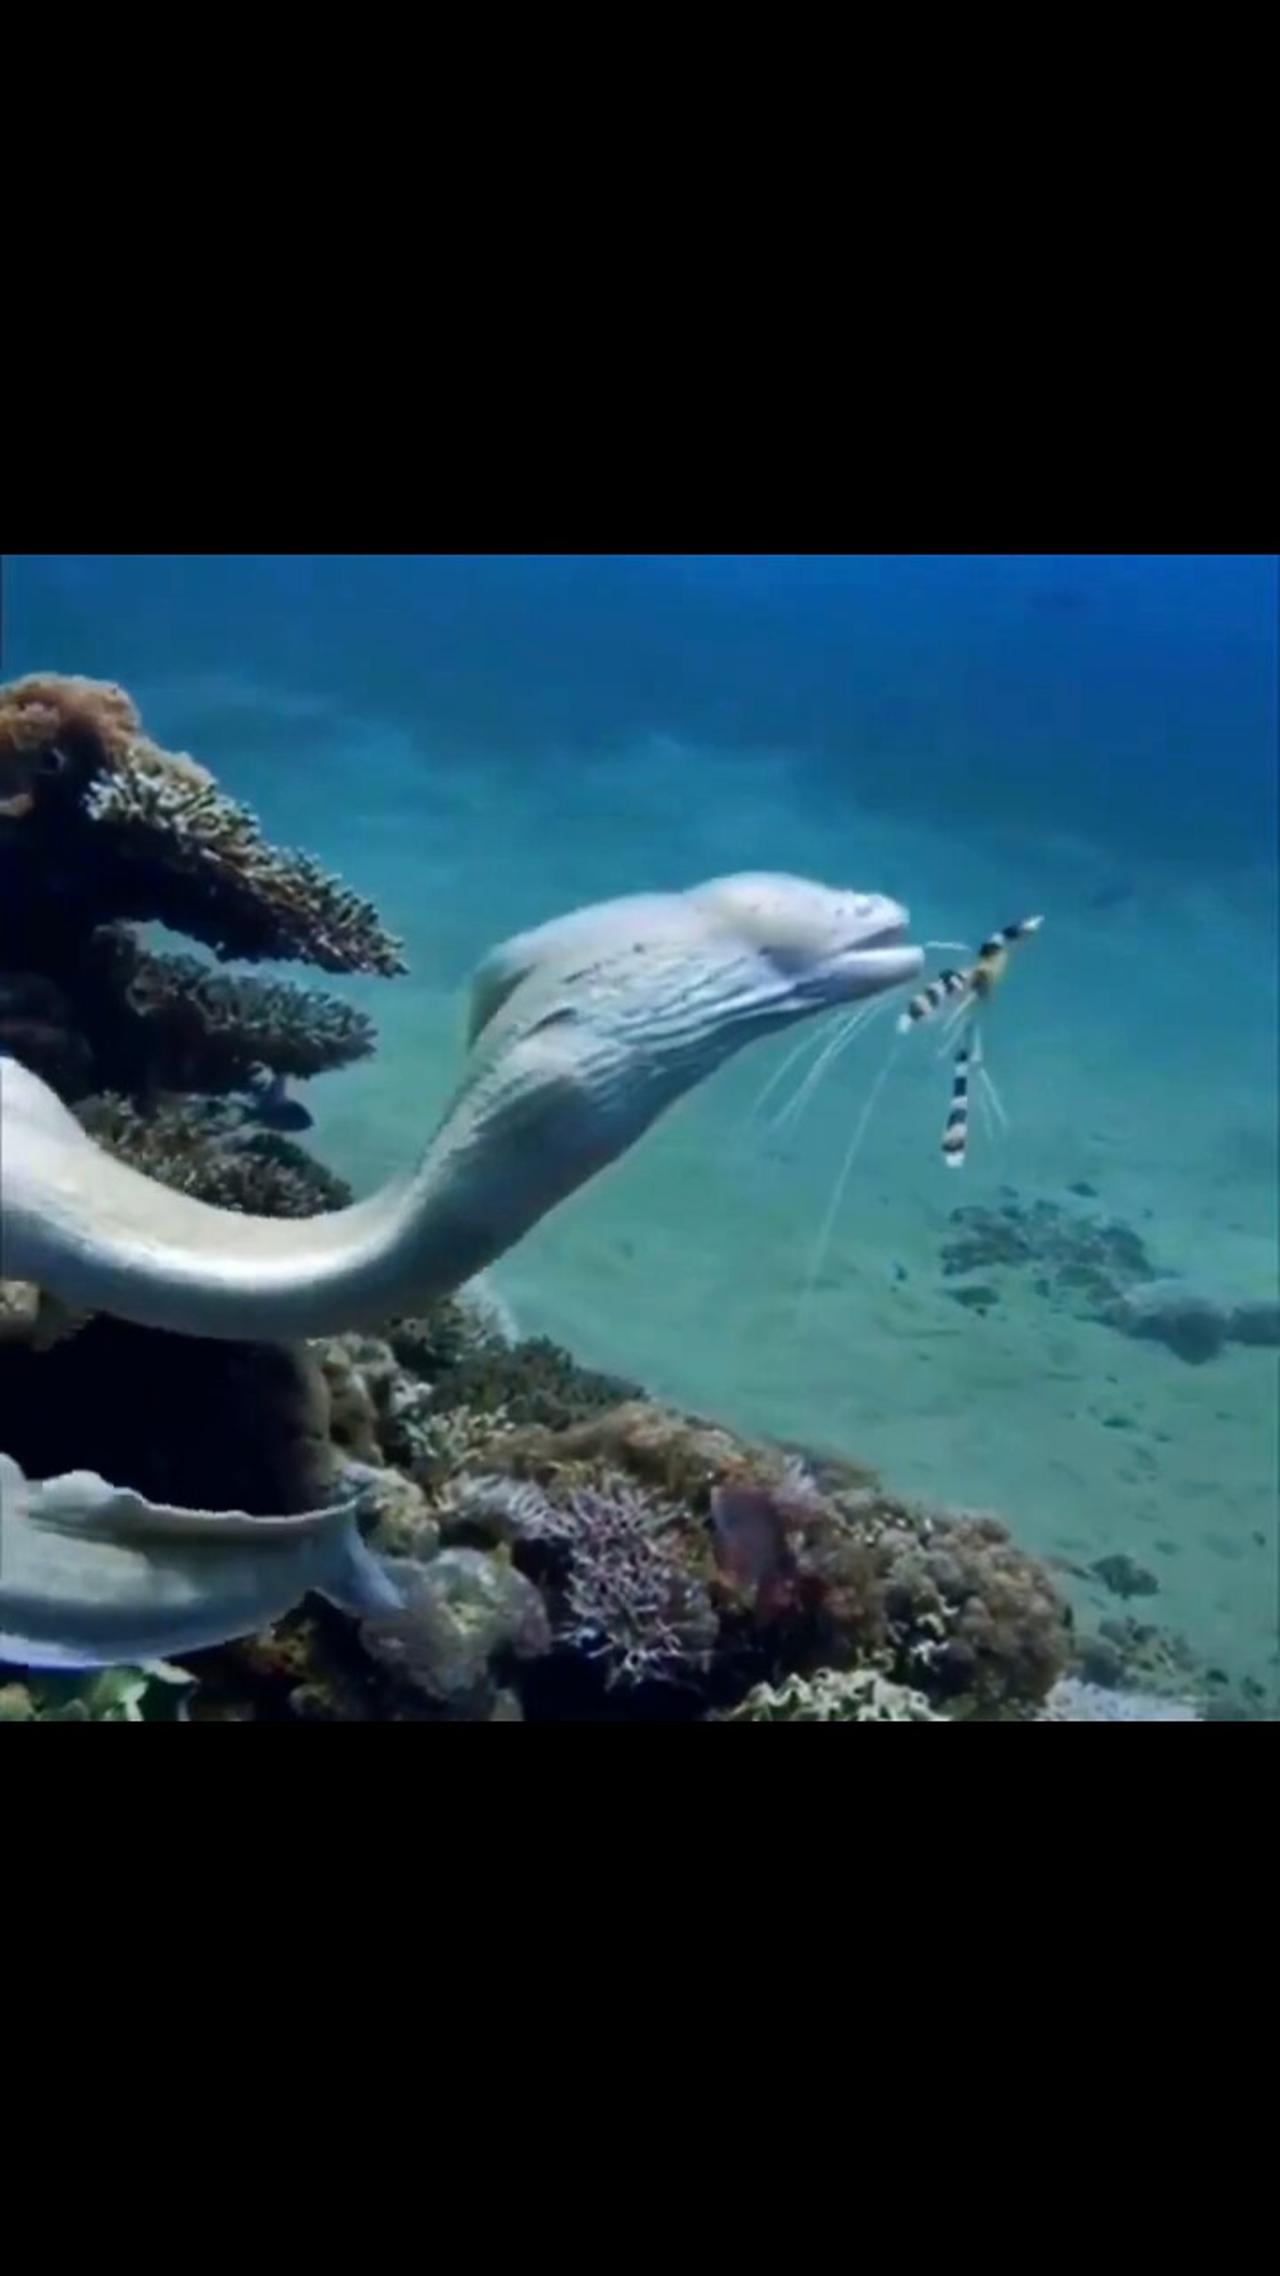 Beautiful moray eel